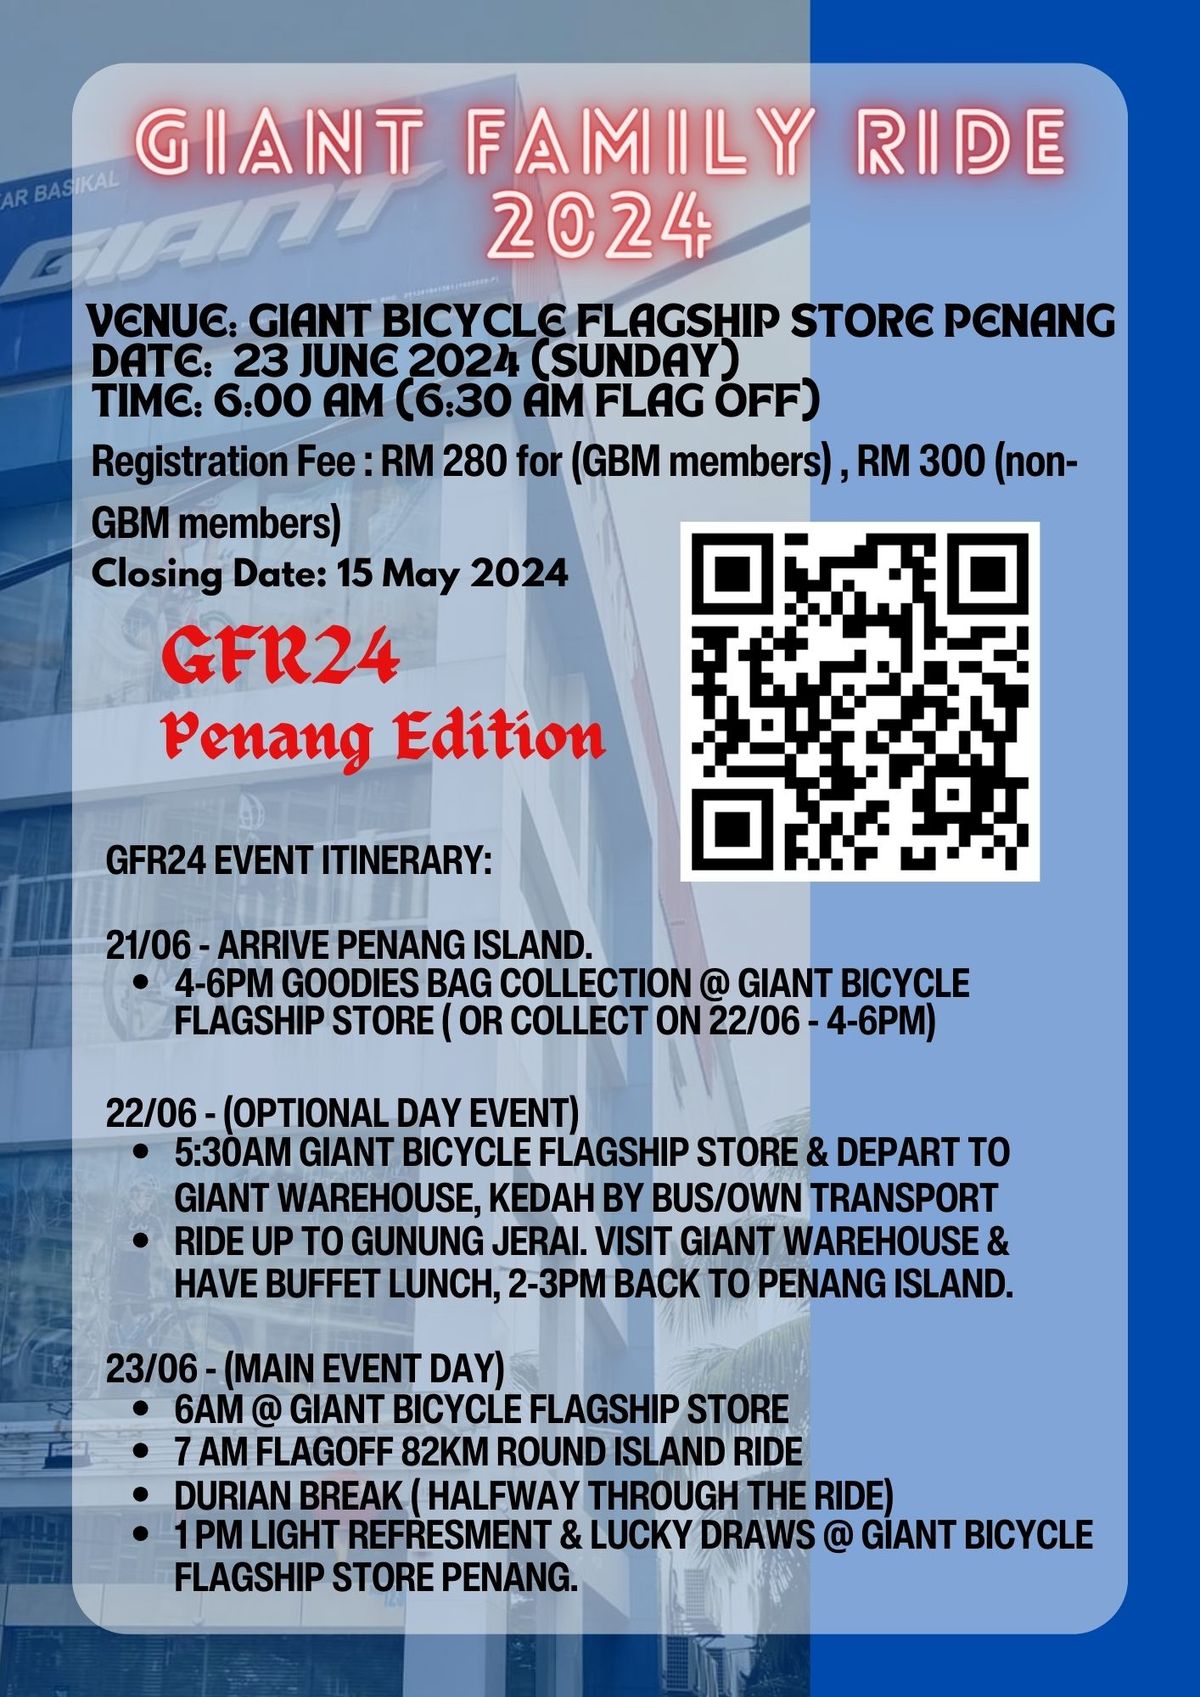 GFR24 Penang Edition